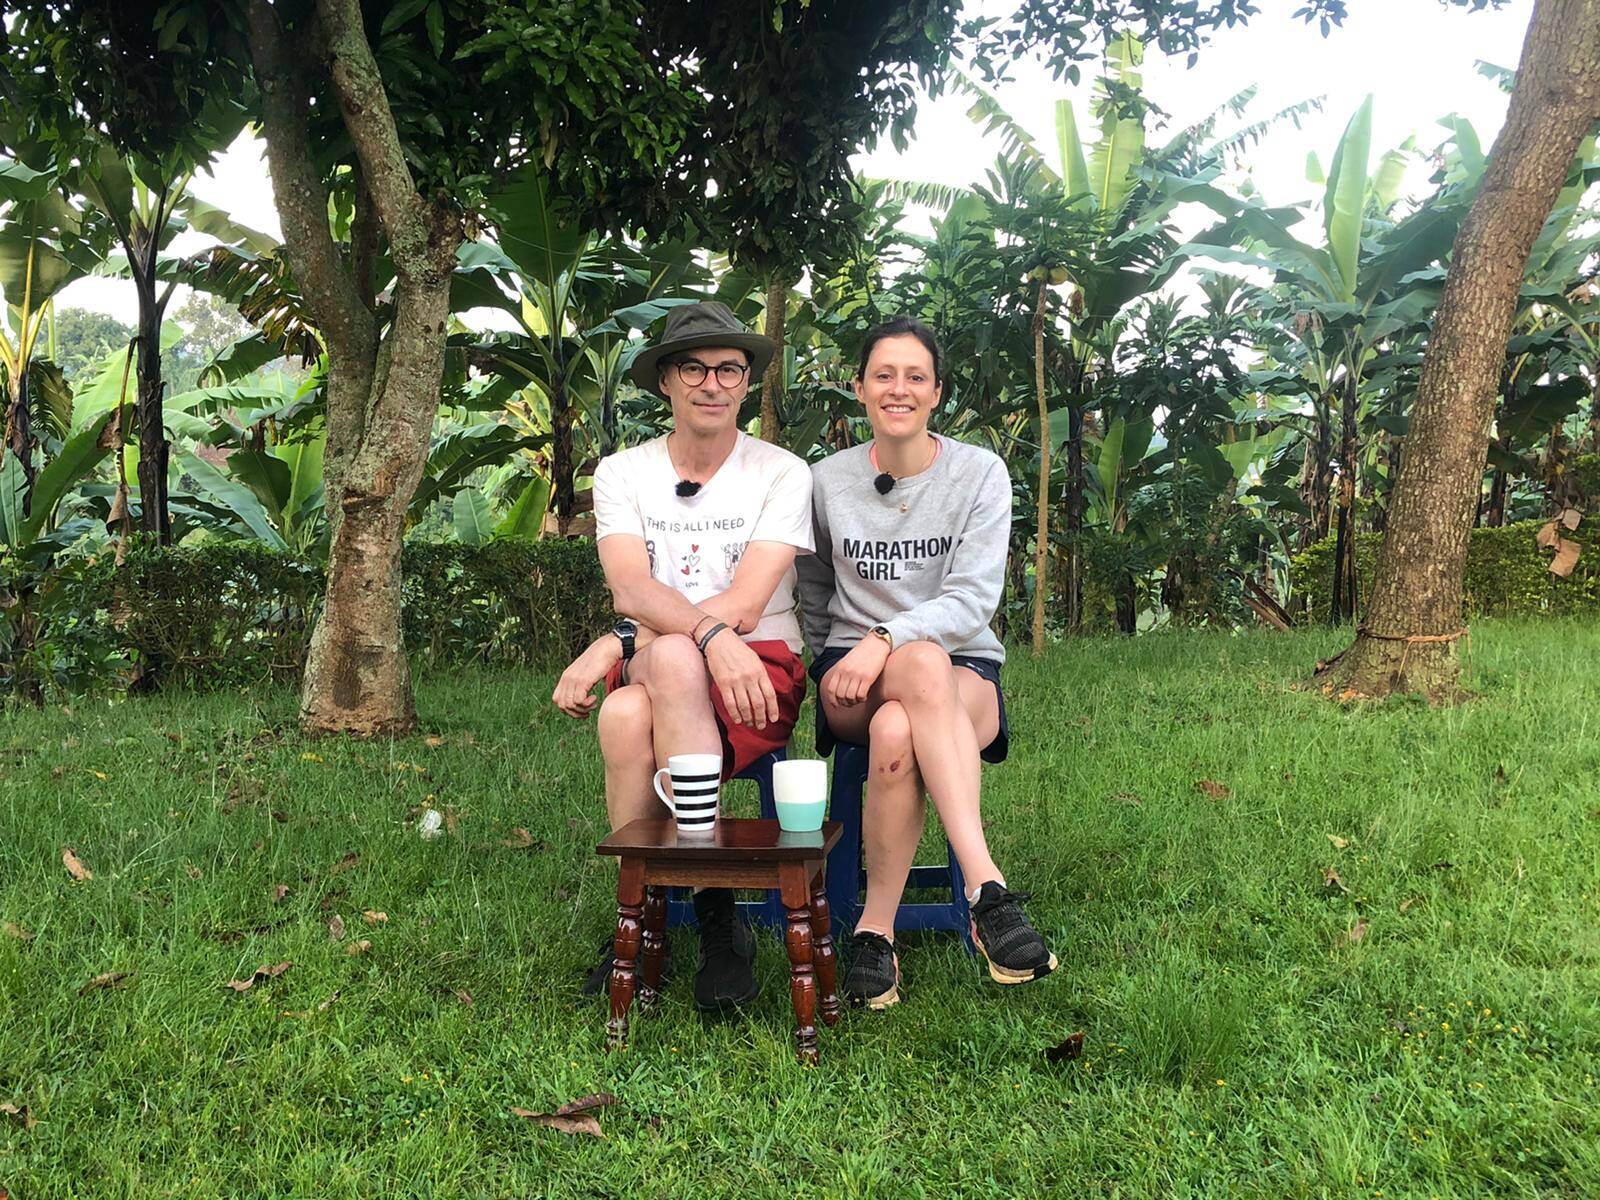 Notre unique interview dans un jardin en Ouganda